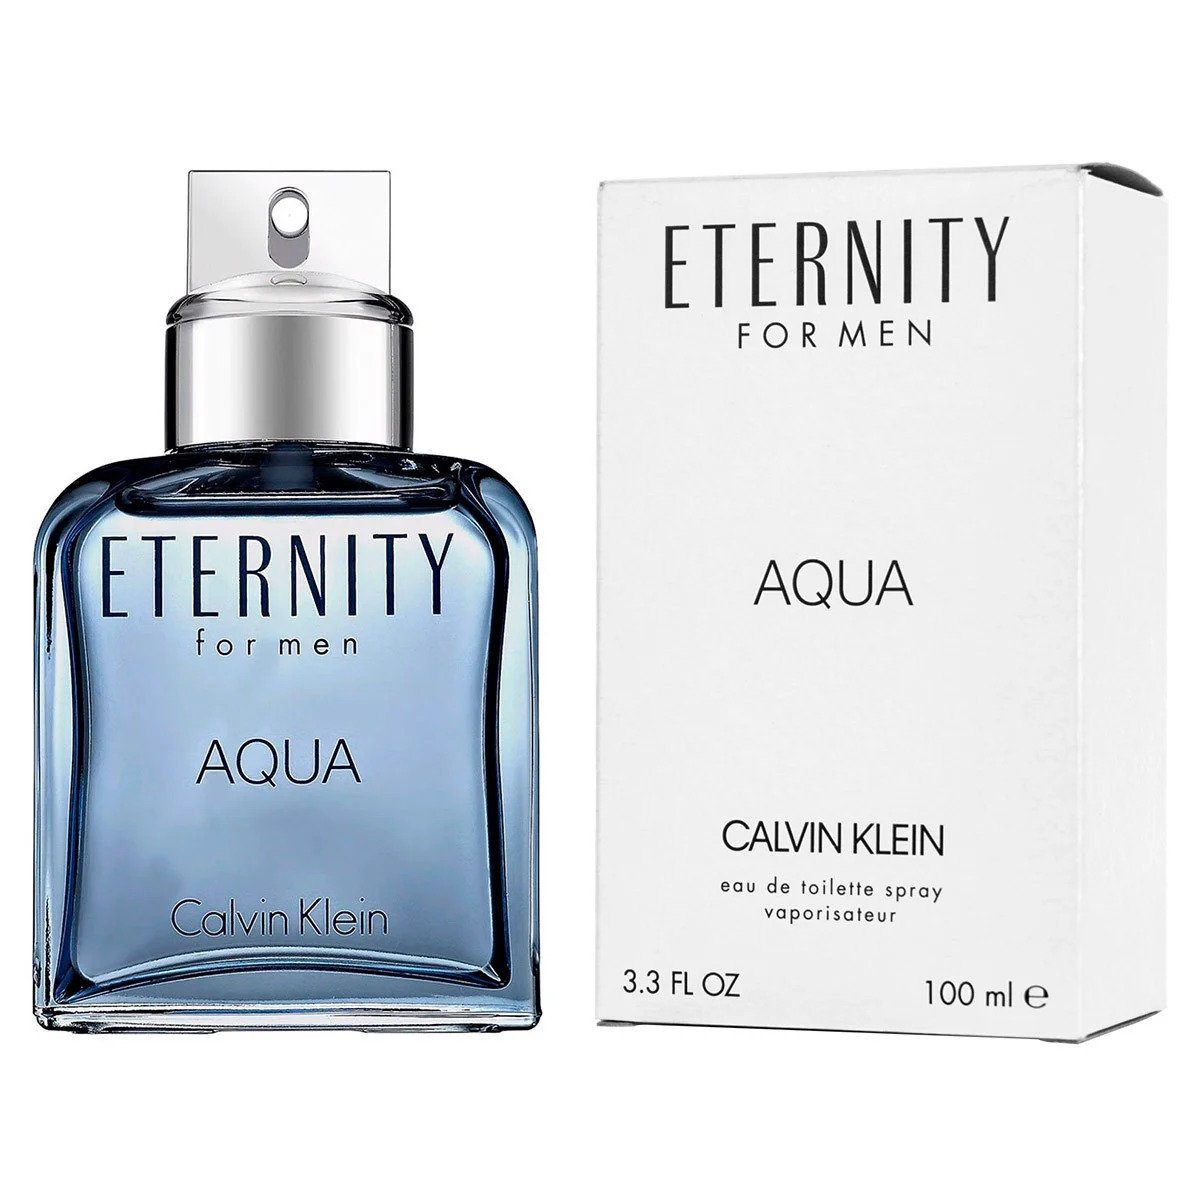 TESTER - Nước hoa Nam Calvin Klein Eternity Aqua for men EDT 100ml